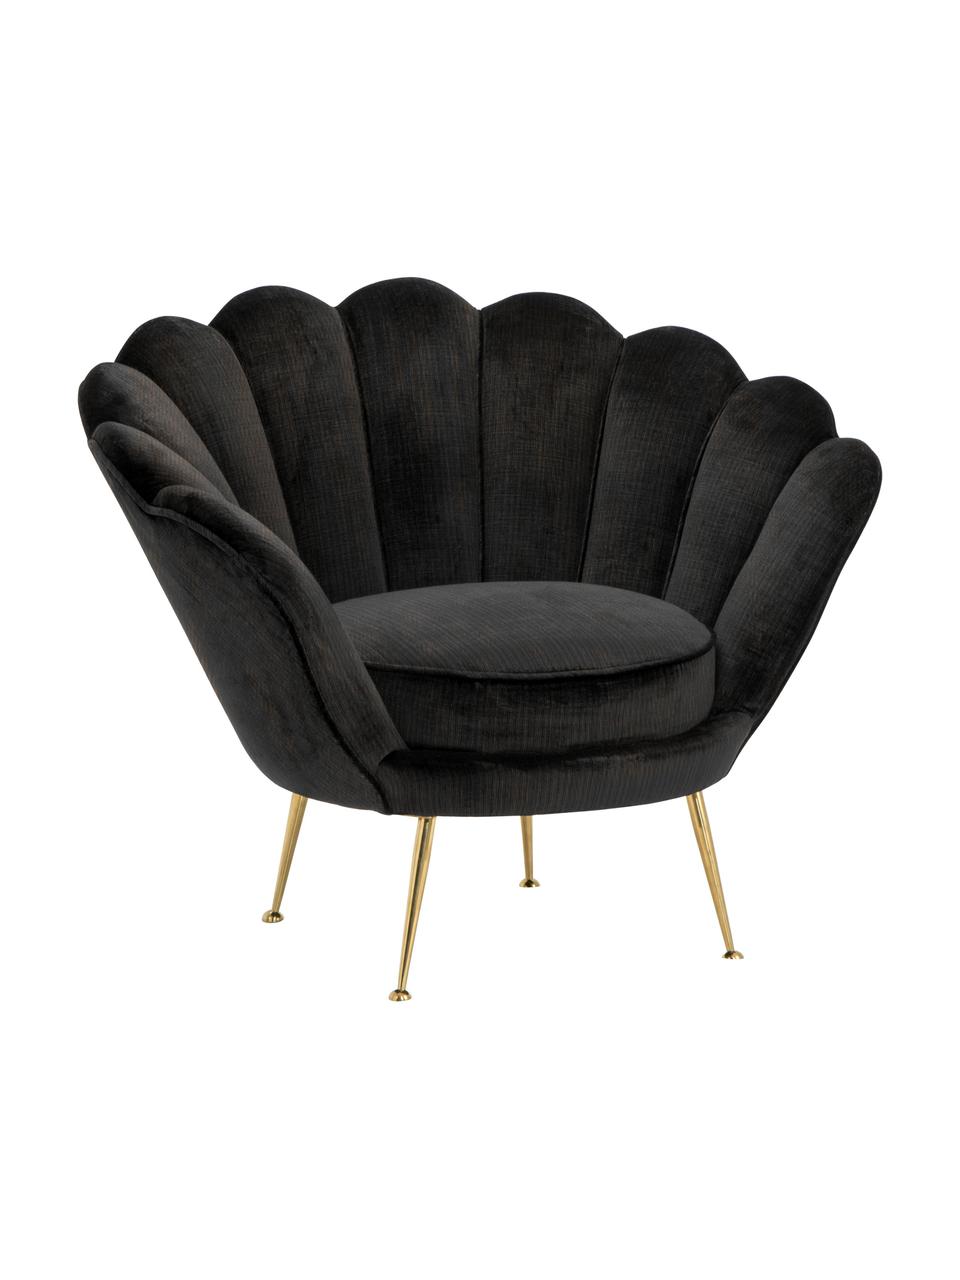 Fluwelen fauteuil Trapezium in zwart, Bekleding: 70% viscose, 30% polyeste, Poten: gecoat metaal, Zwart, messingkleurig, B 97 x D 79 cm